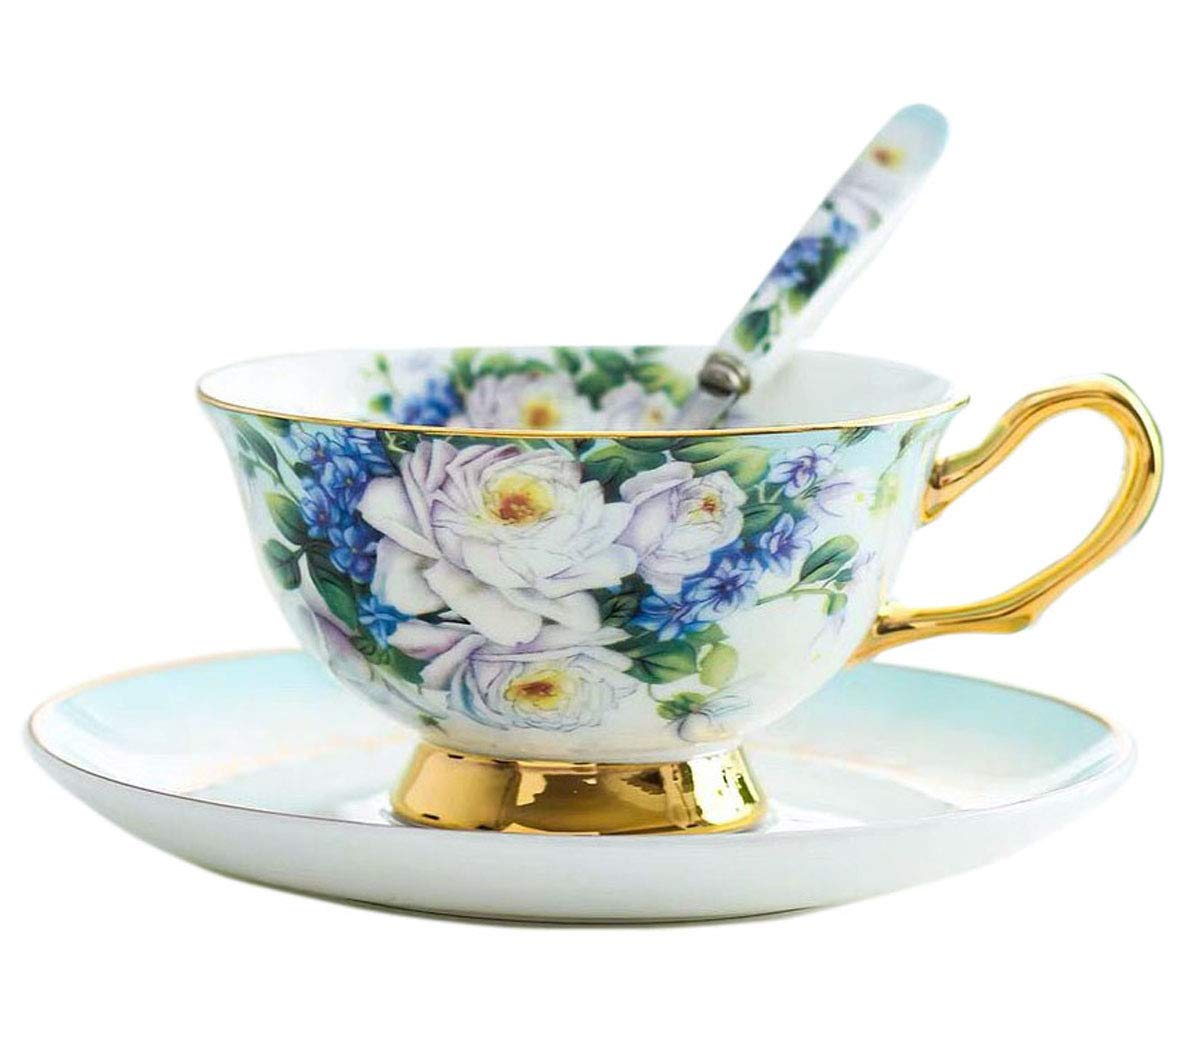 Magnifique YBK Tech Ensemble Tasse et Soucoupe de Style européen en Porcelaine Anglaise pour Le thé, Le café, Le Petit-déjeuner et la Cuisine - Fleurs Violettes (Bleu) RVXDvPADW en solde